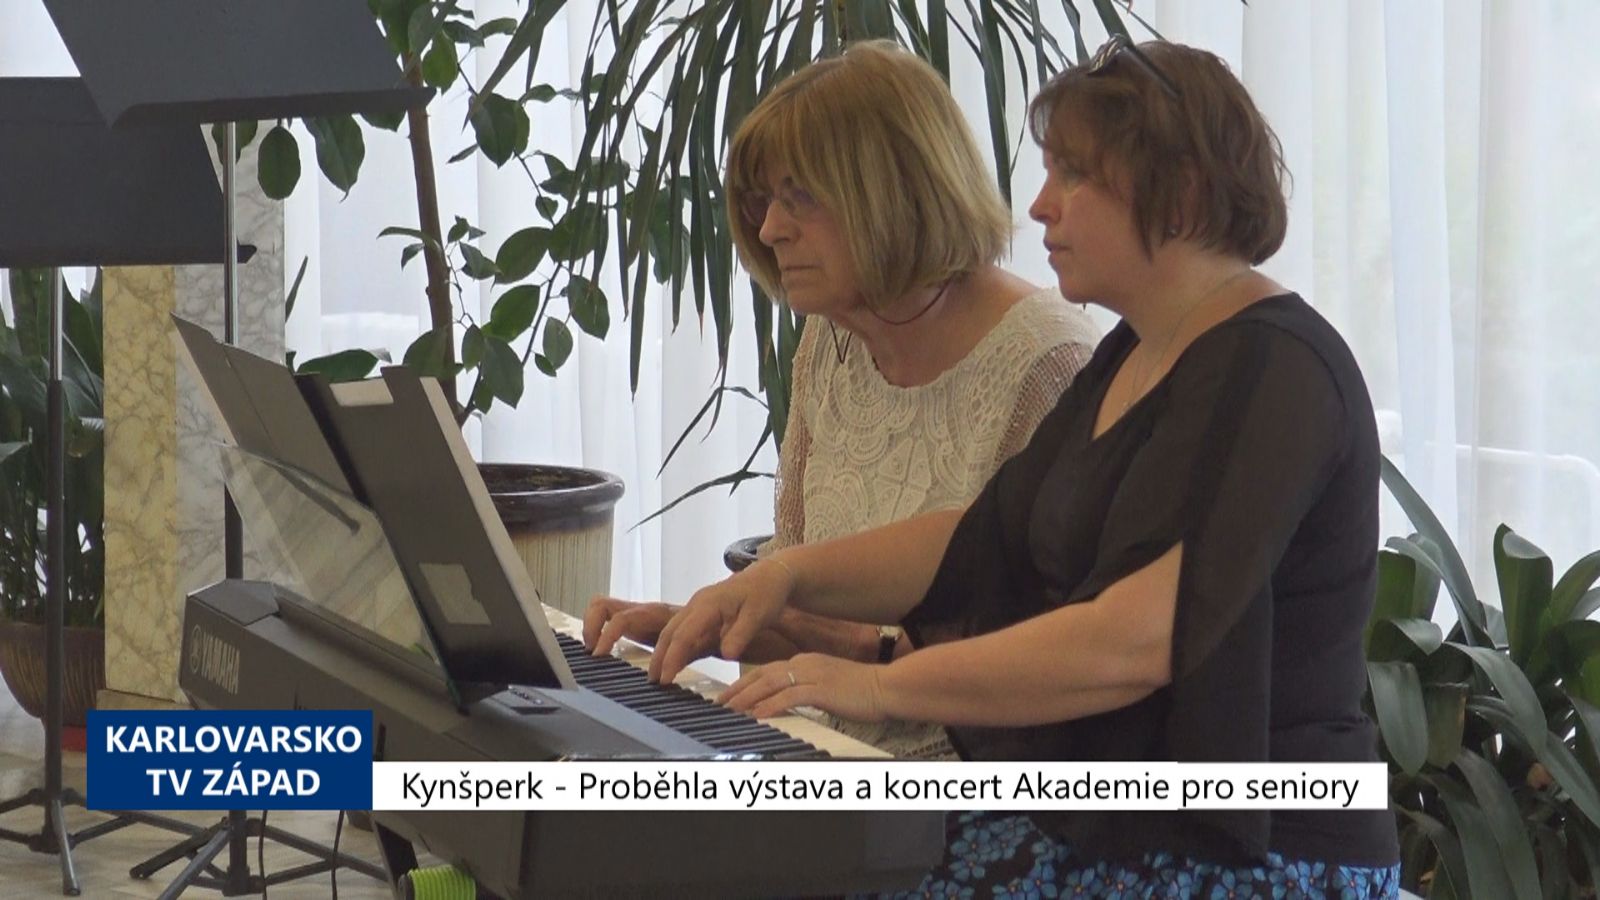 Kynšperk: Proběhla výstava a koncert Akademie pro seniory (TV Západ)